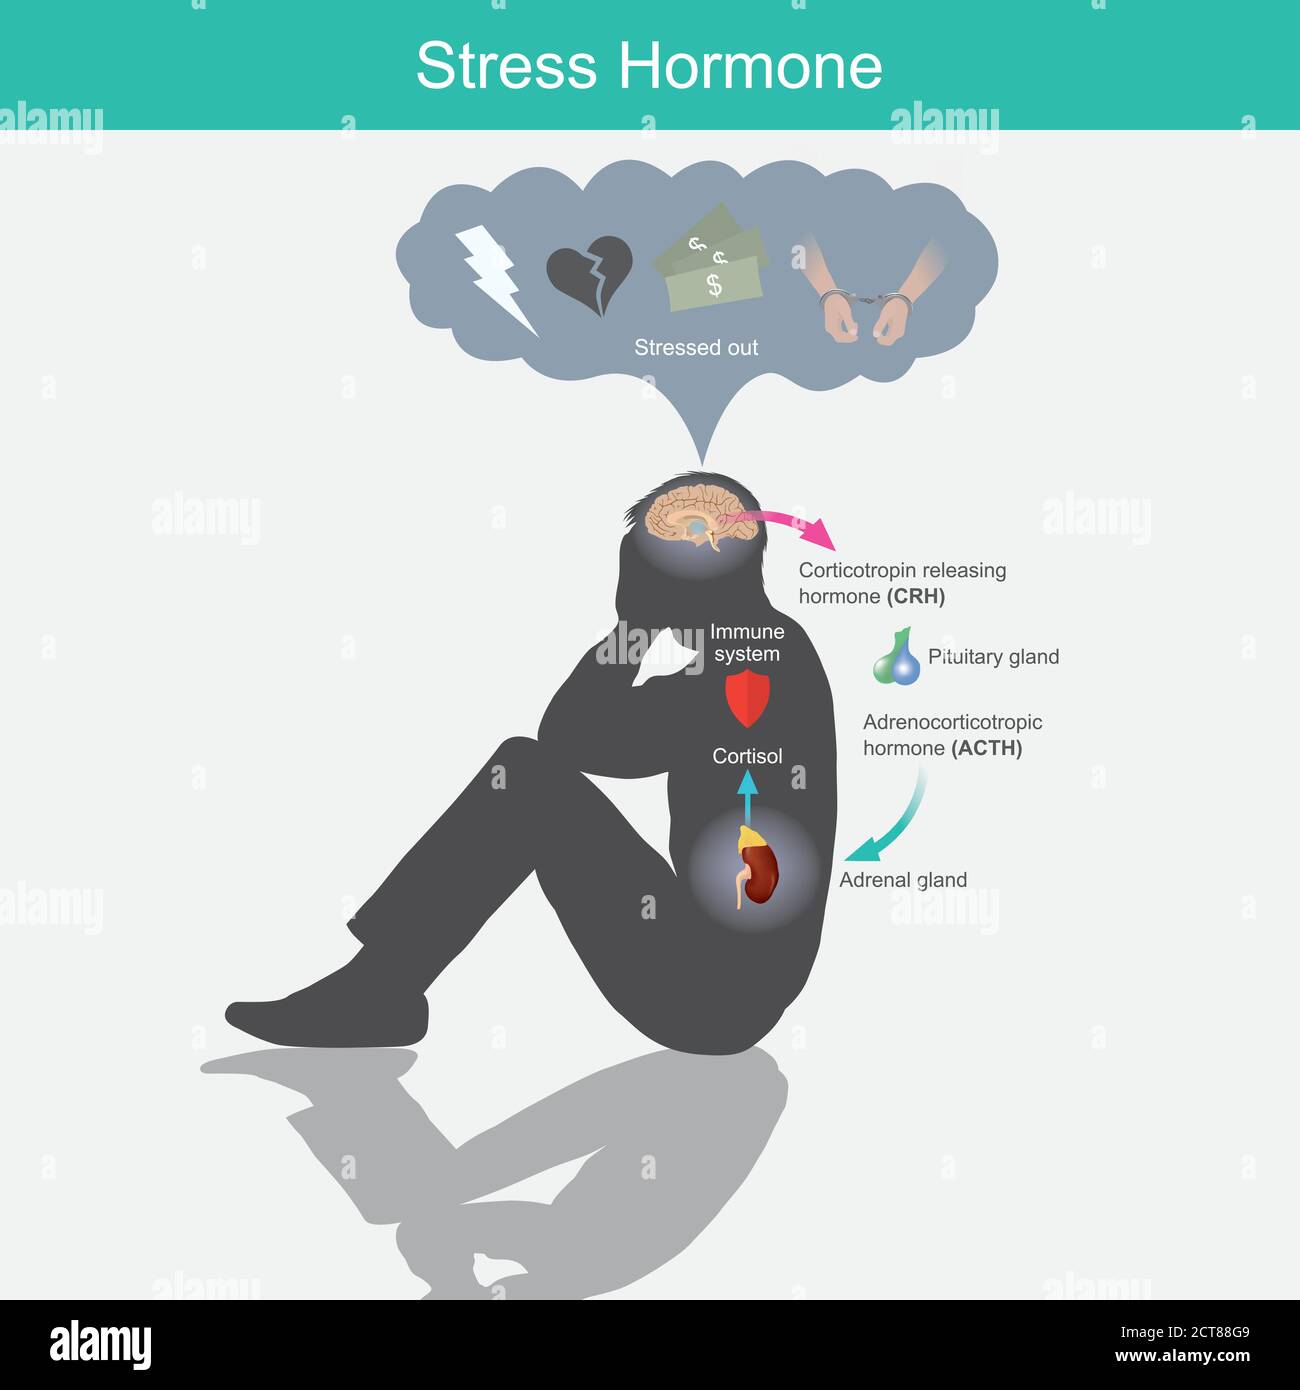 Stresshormon. Diagramm zeigt die Stressantwort im menschlichen Körper durch Stimulation des Gehirns. Stock Vektor